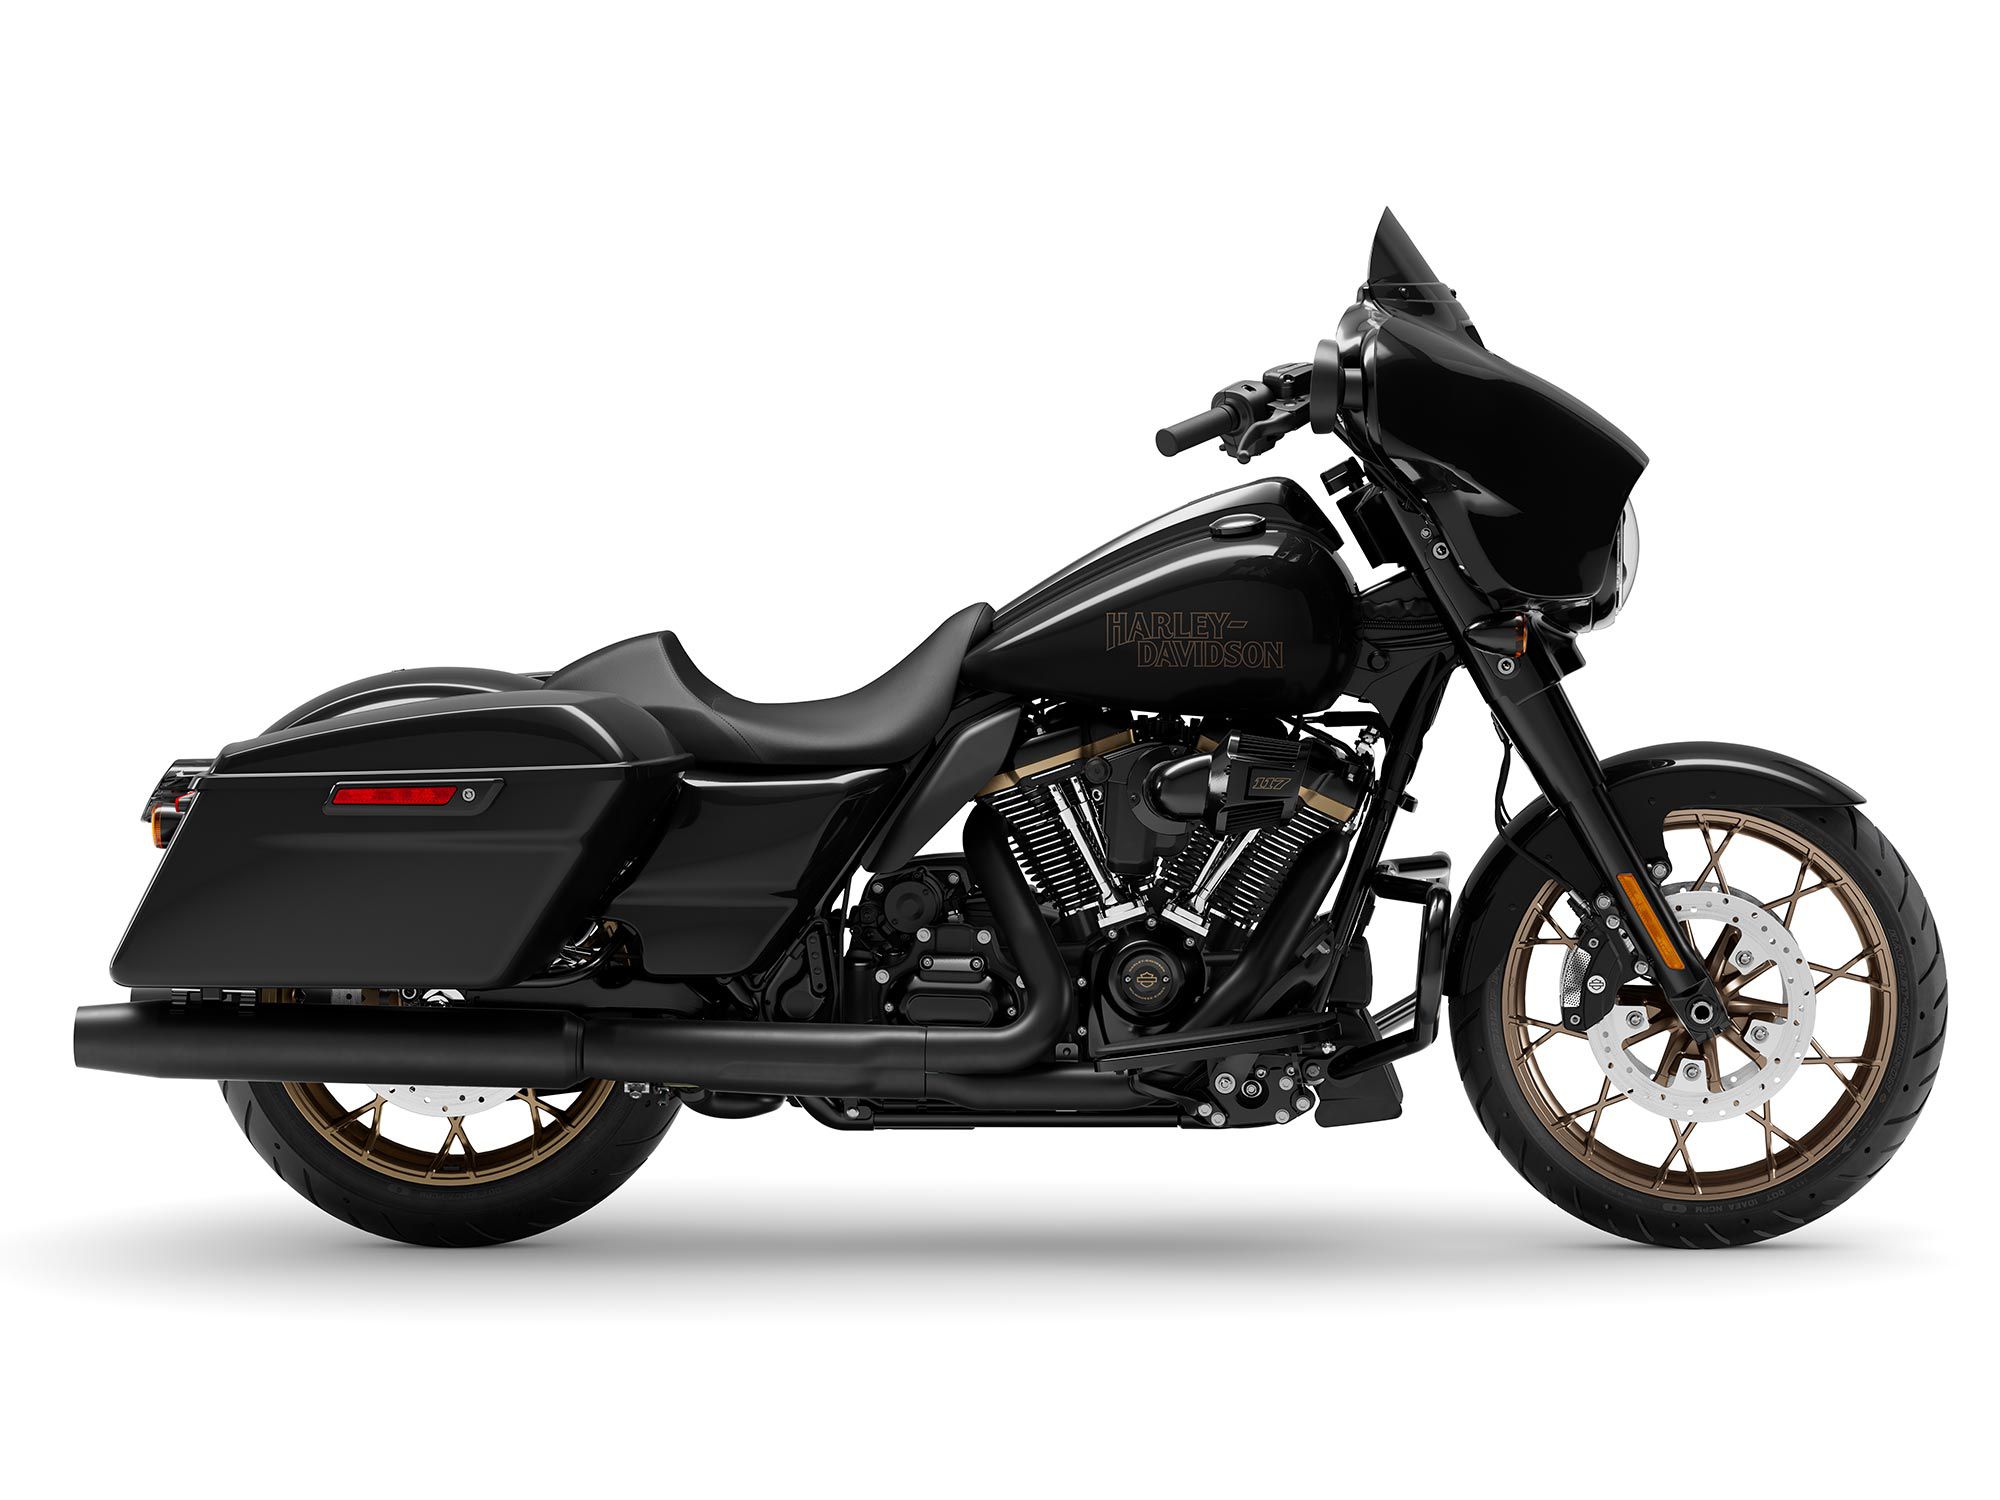 2022 Harley-Davidson Street Glide ST in Vivid Black.